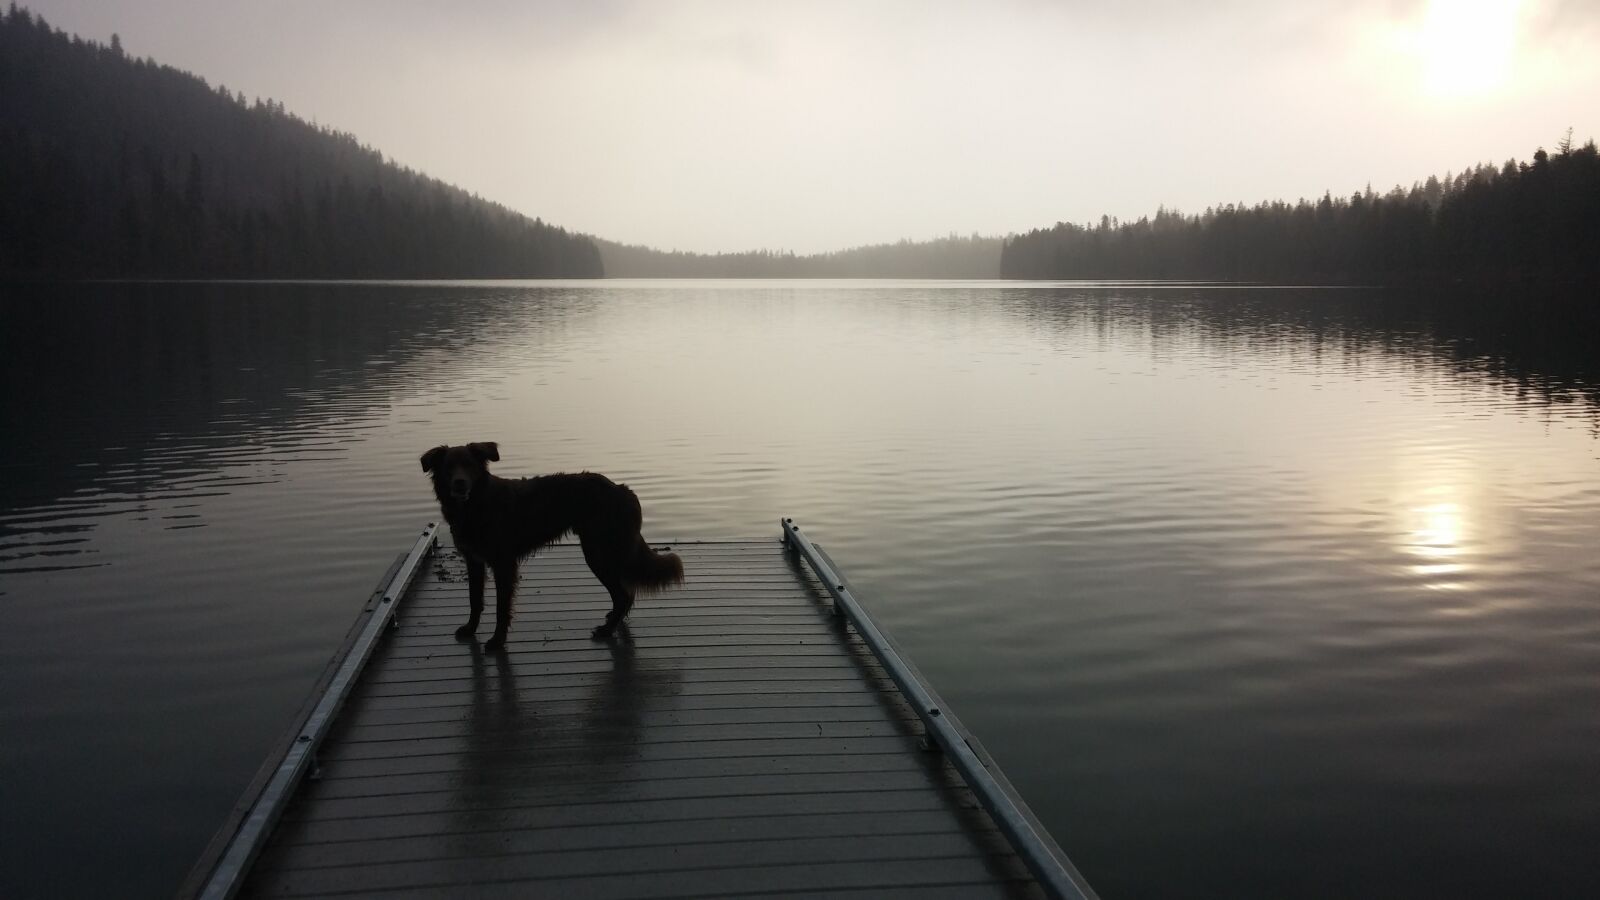 LG G2 sample photo. Dog, lake, dock photography